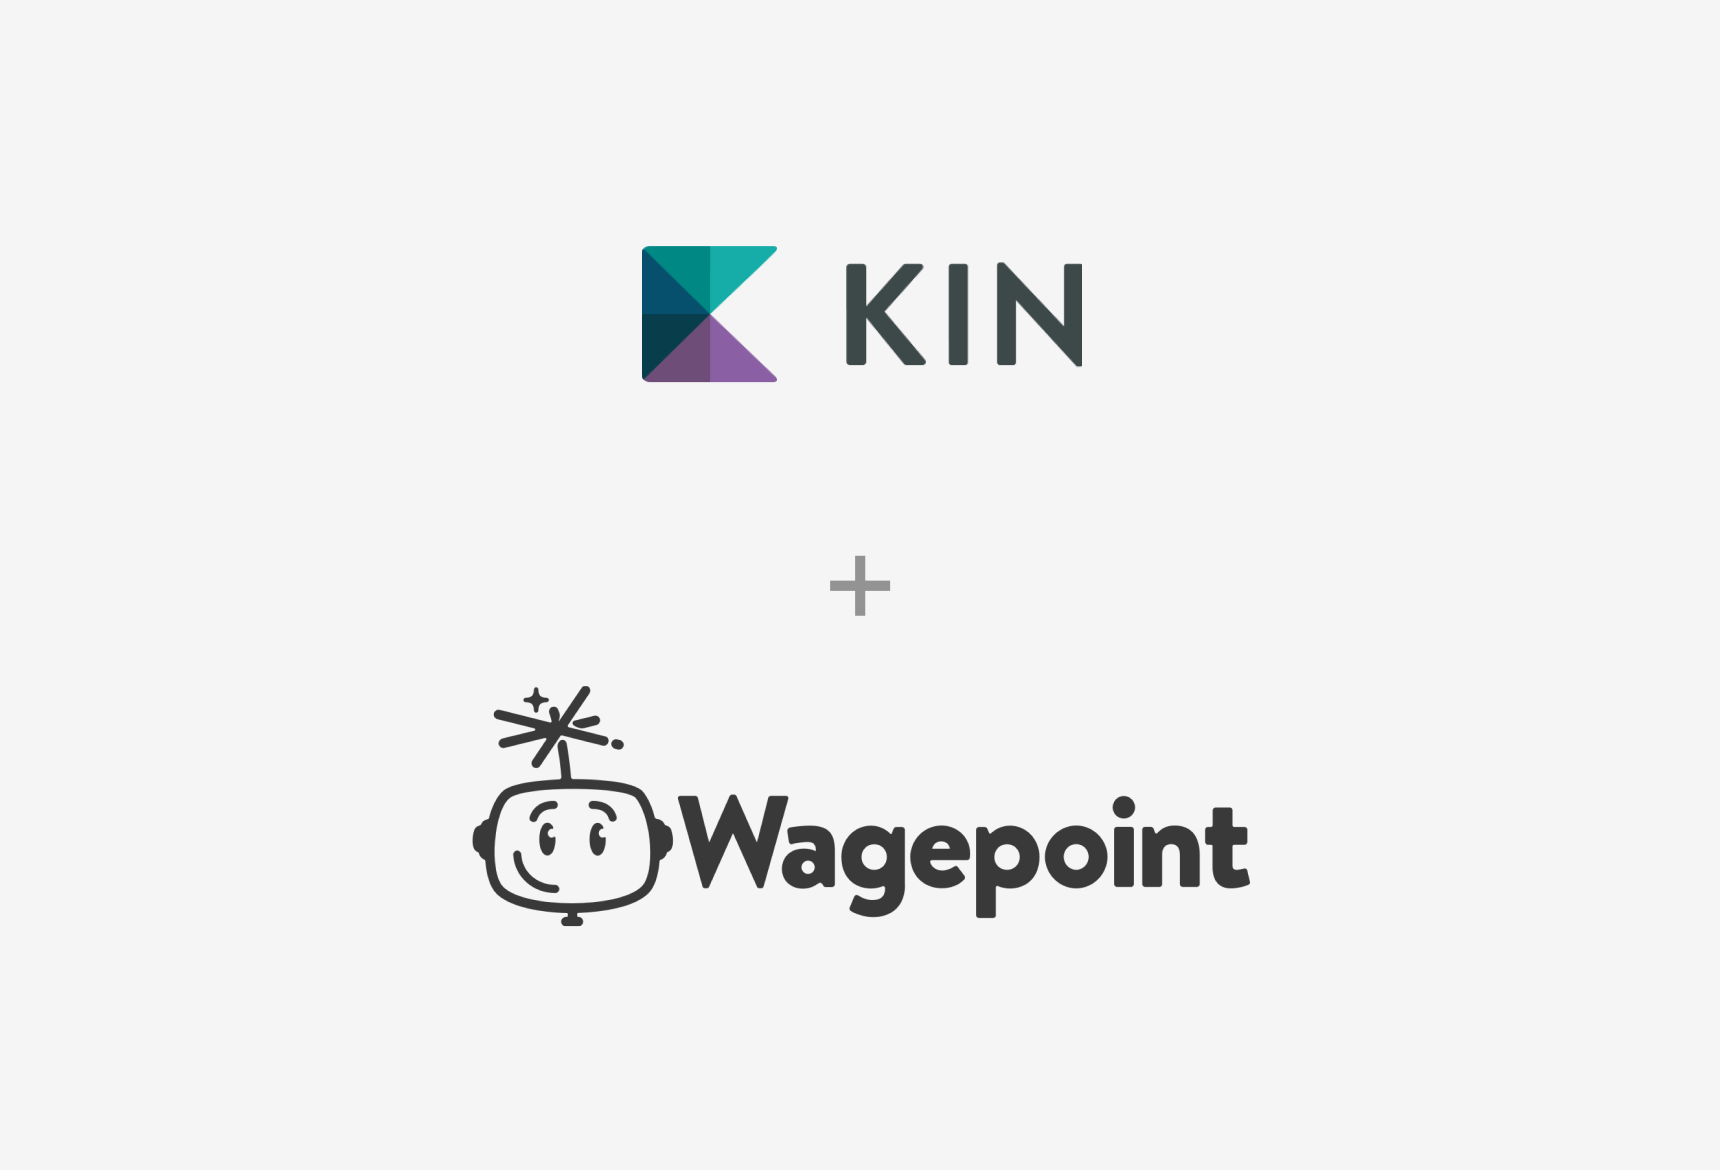 Kin + Wagepoint = BFFs